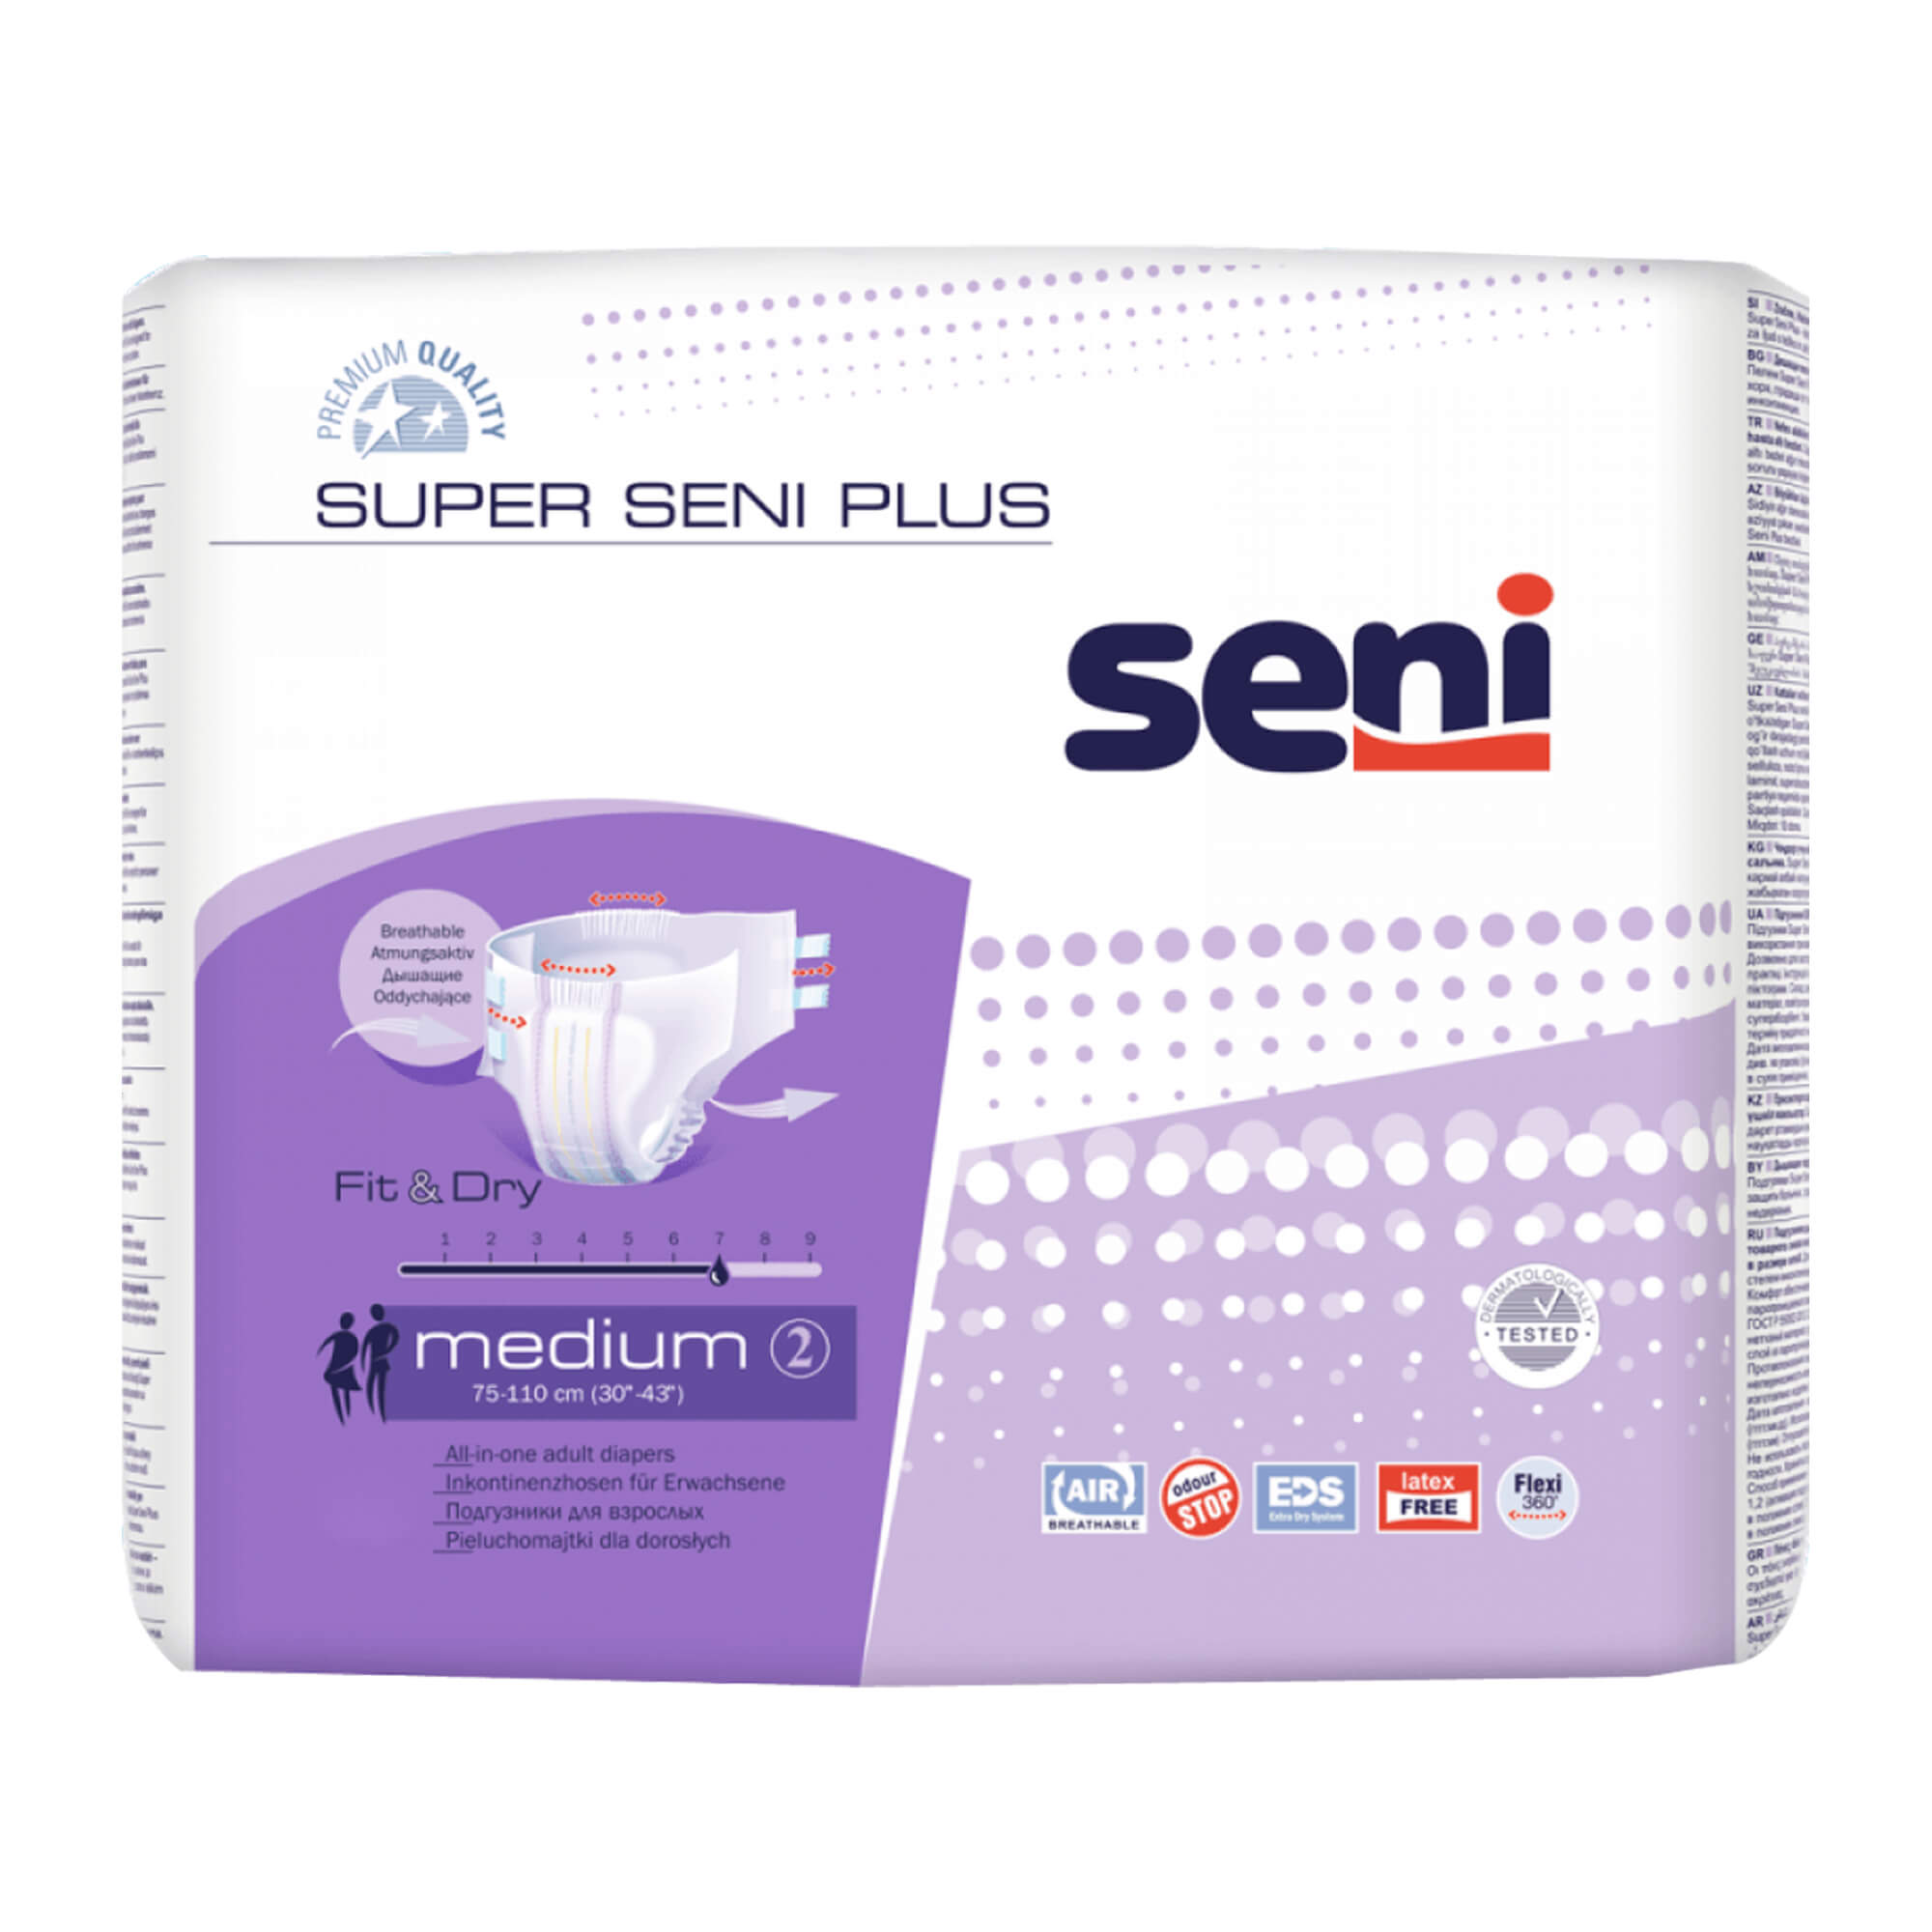 Die Inkontinenzhosen Super SENI Plus sind eine zuverlässige Lösung bei Inkontinenz. Bestens geeignet für mobile, als auch bettlägerige Betroffene.